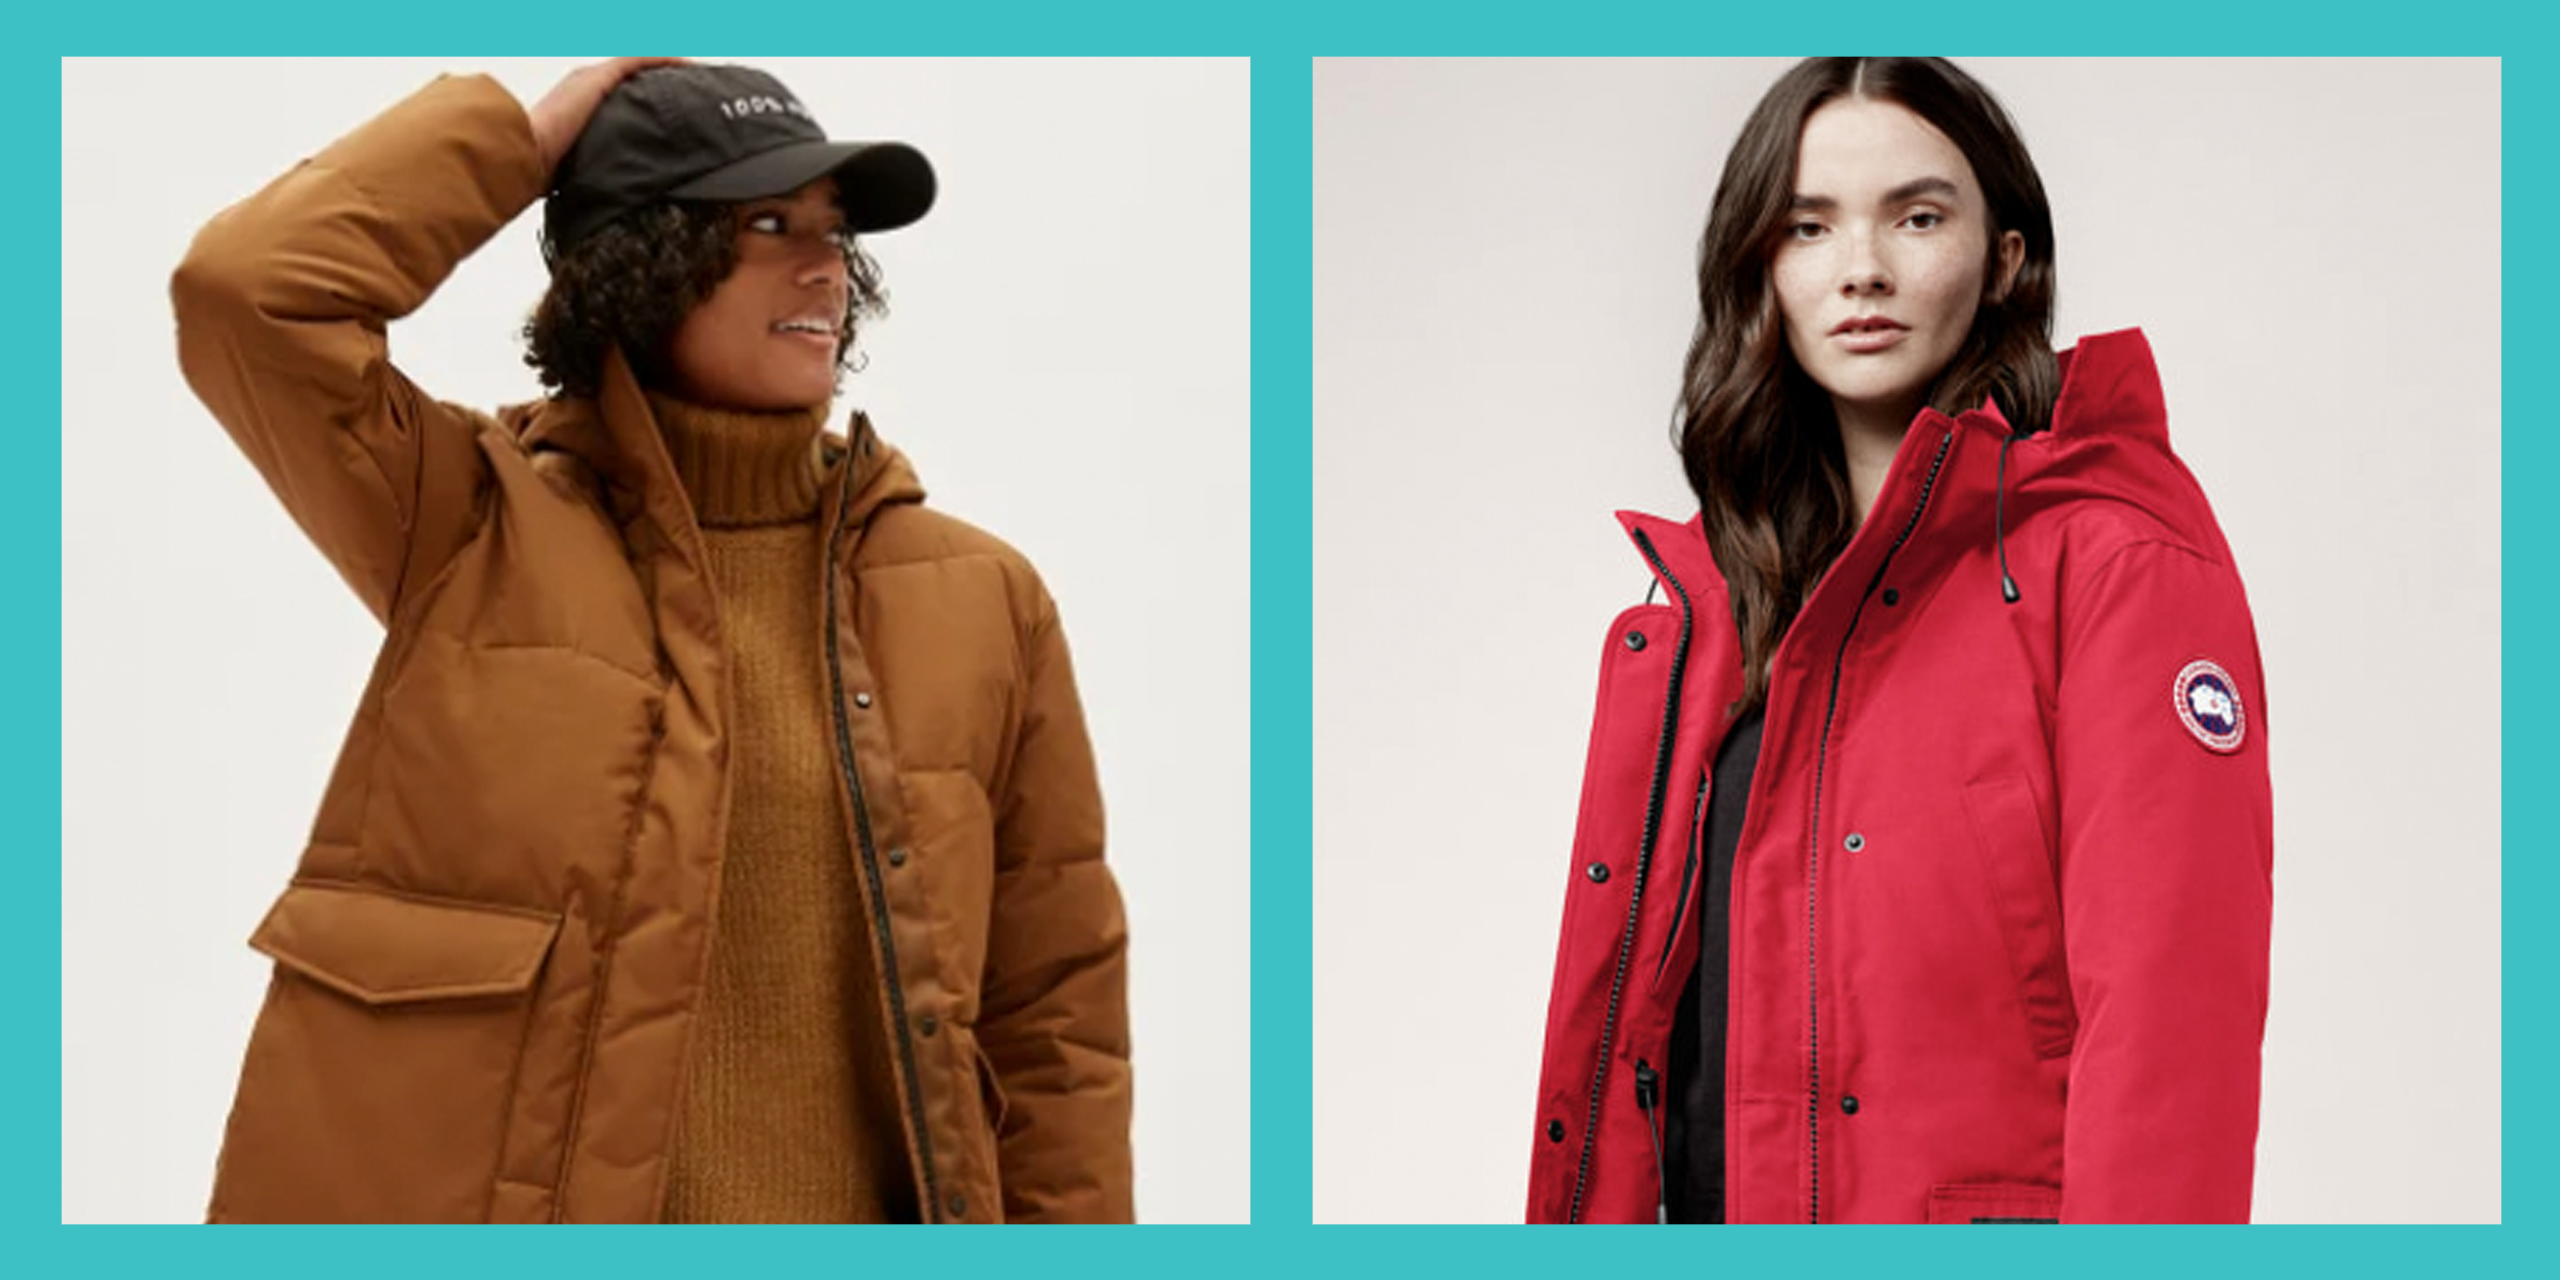 20 Best Winter Coats for Women 2021 - Warm, Stylish Jackets